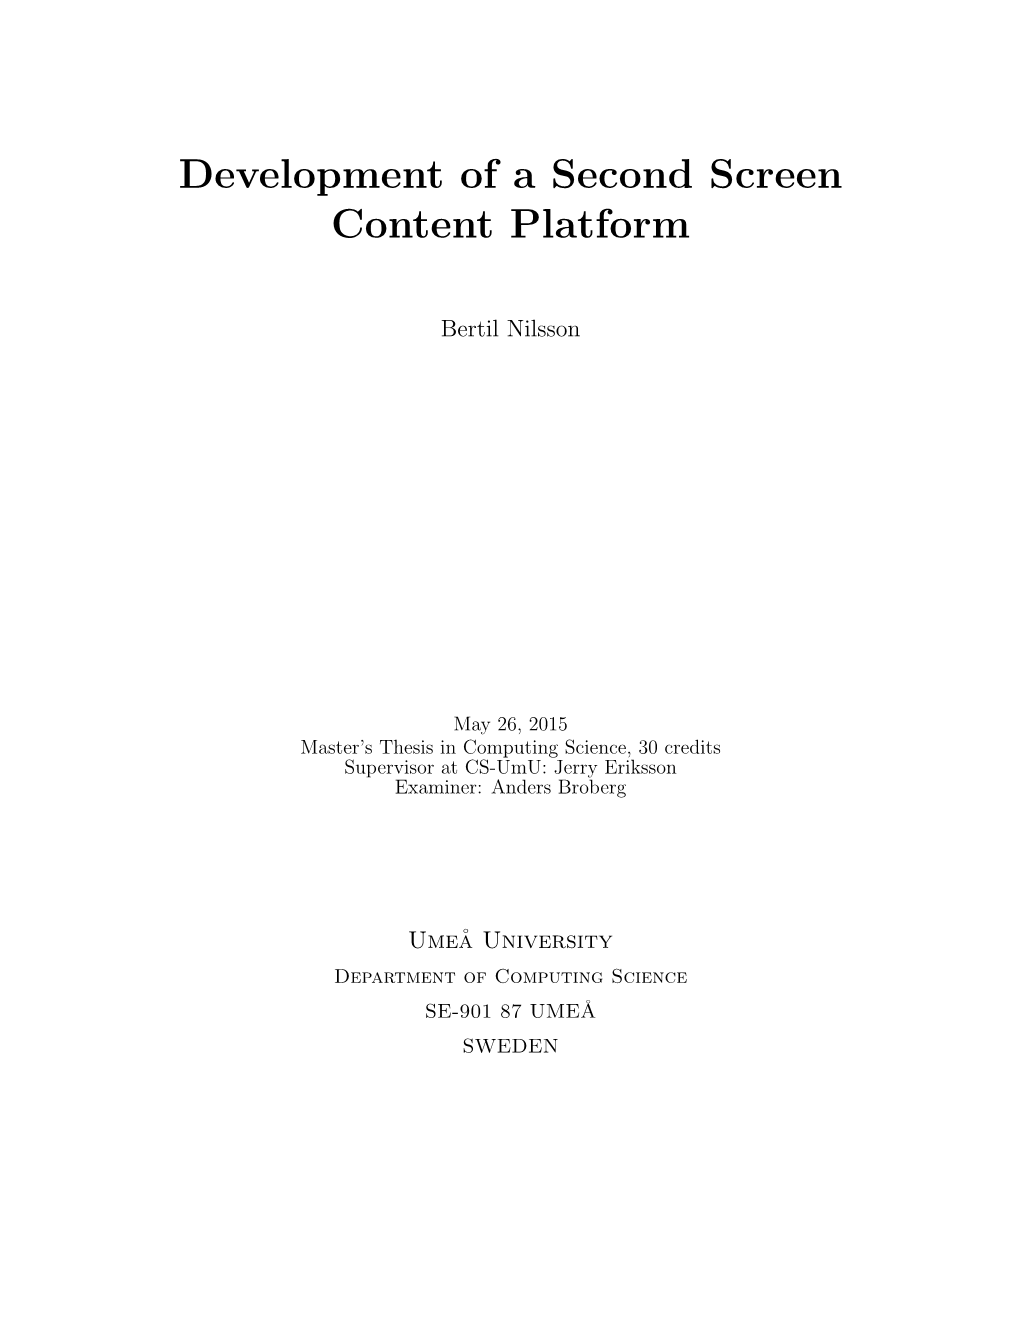 Development of a Second Screen Content Platform